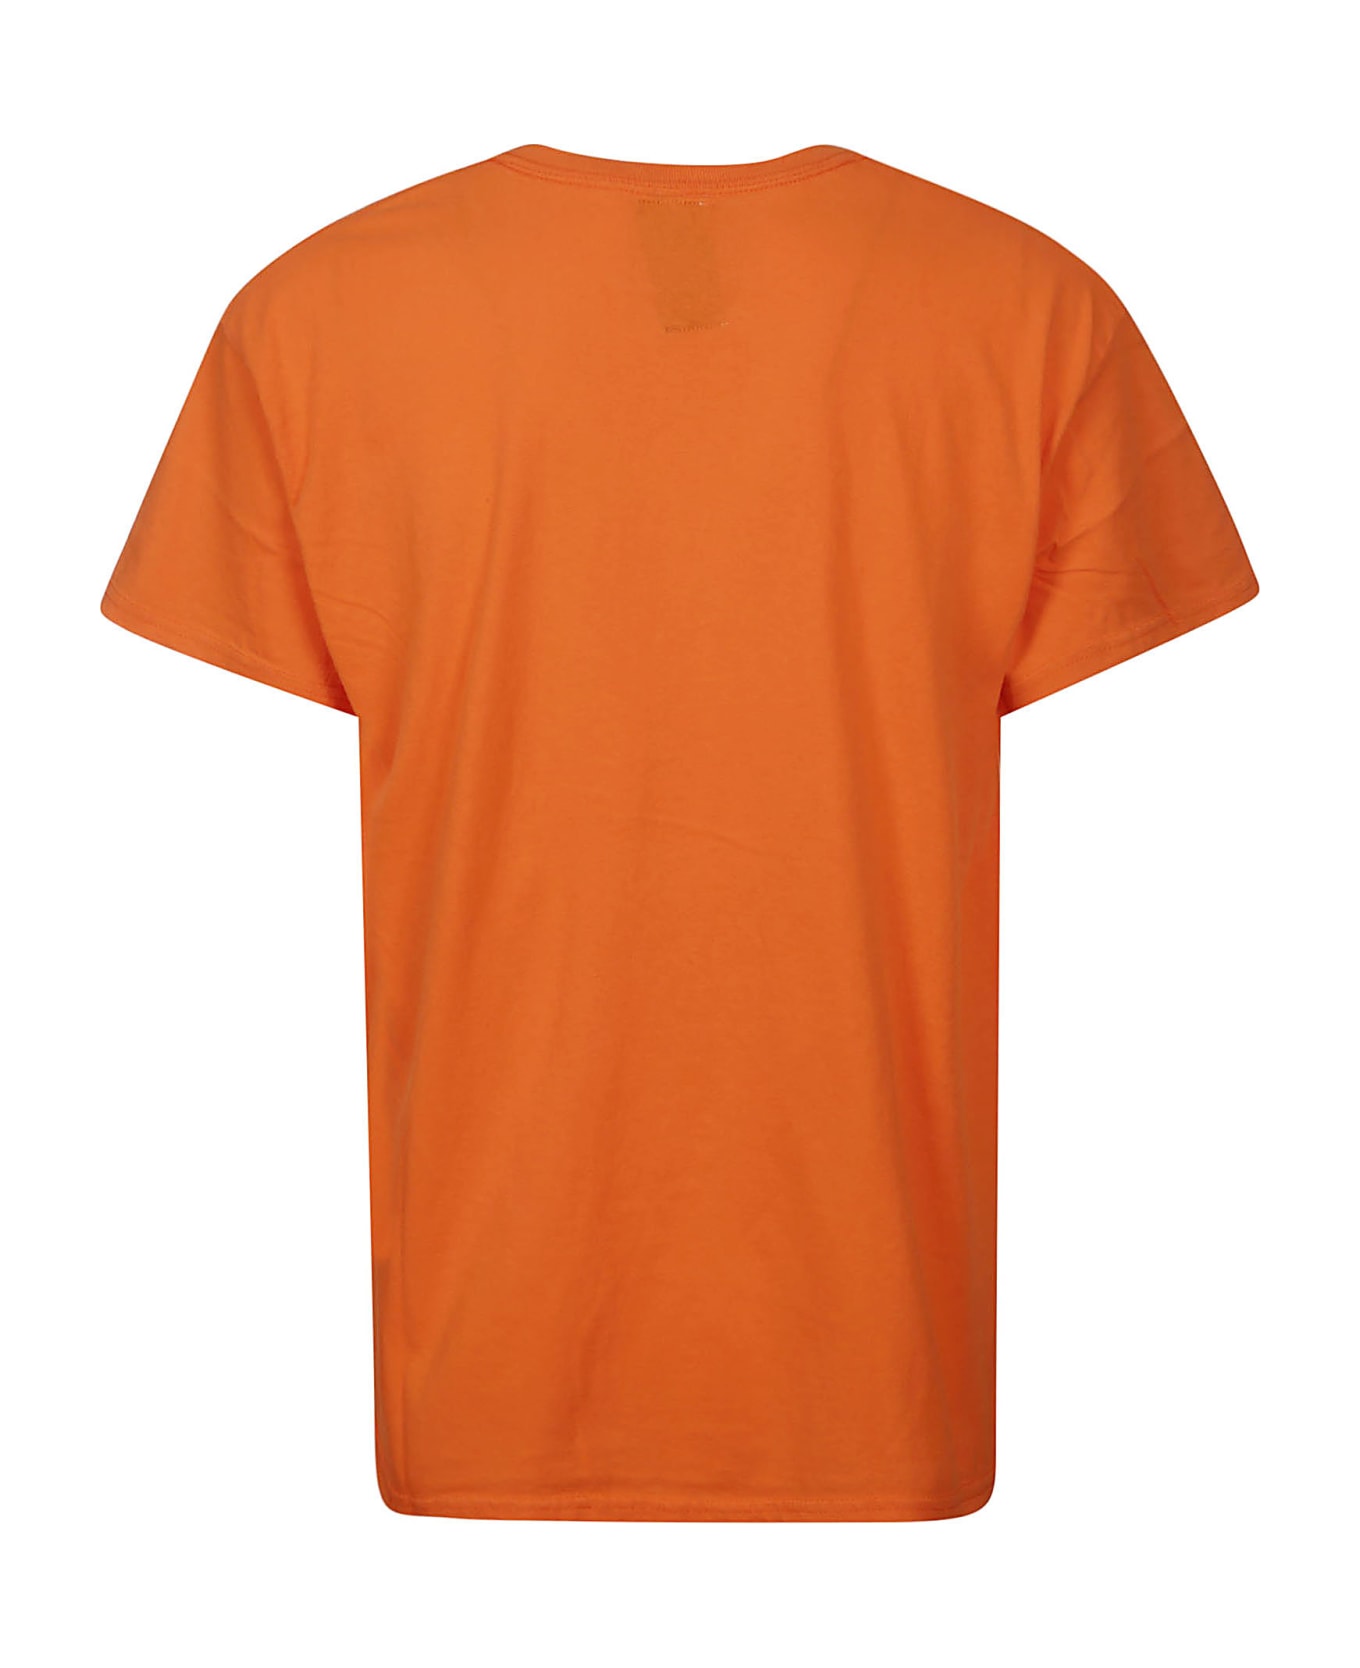 Wild Donkey T-shirt - Orange